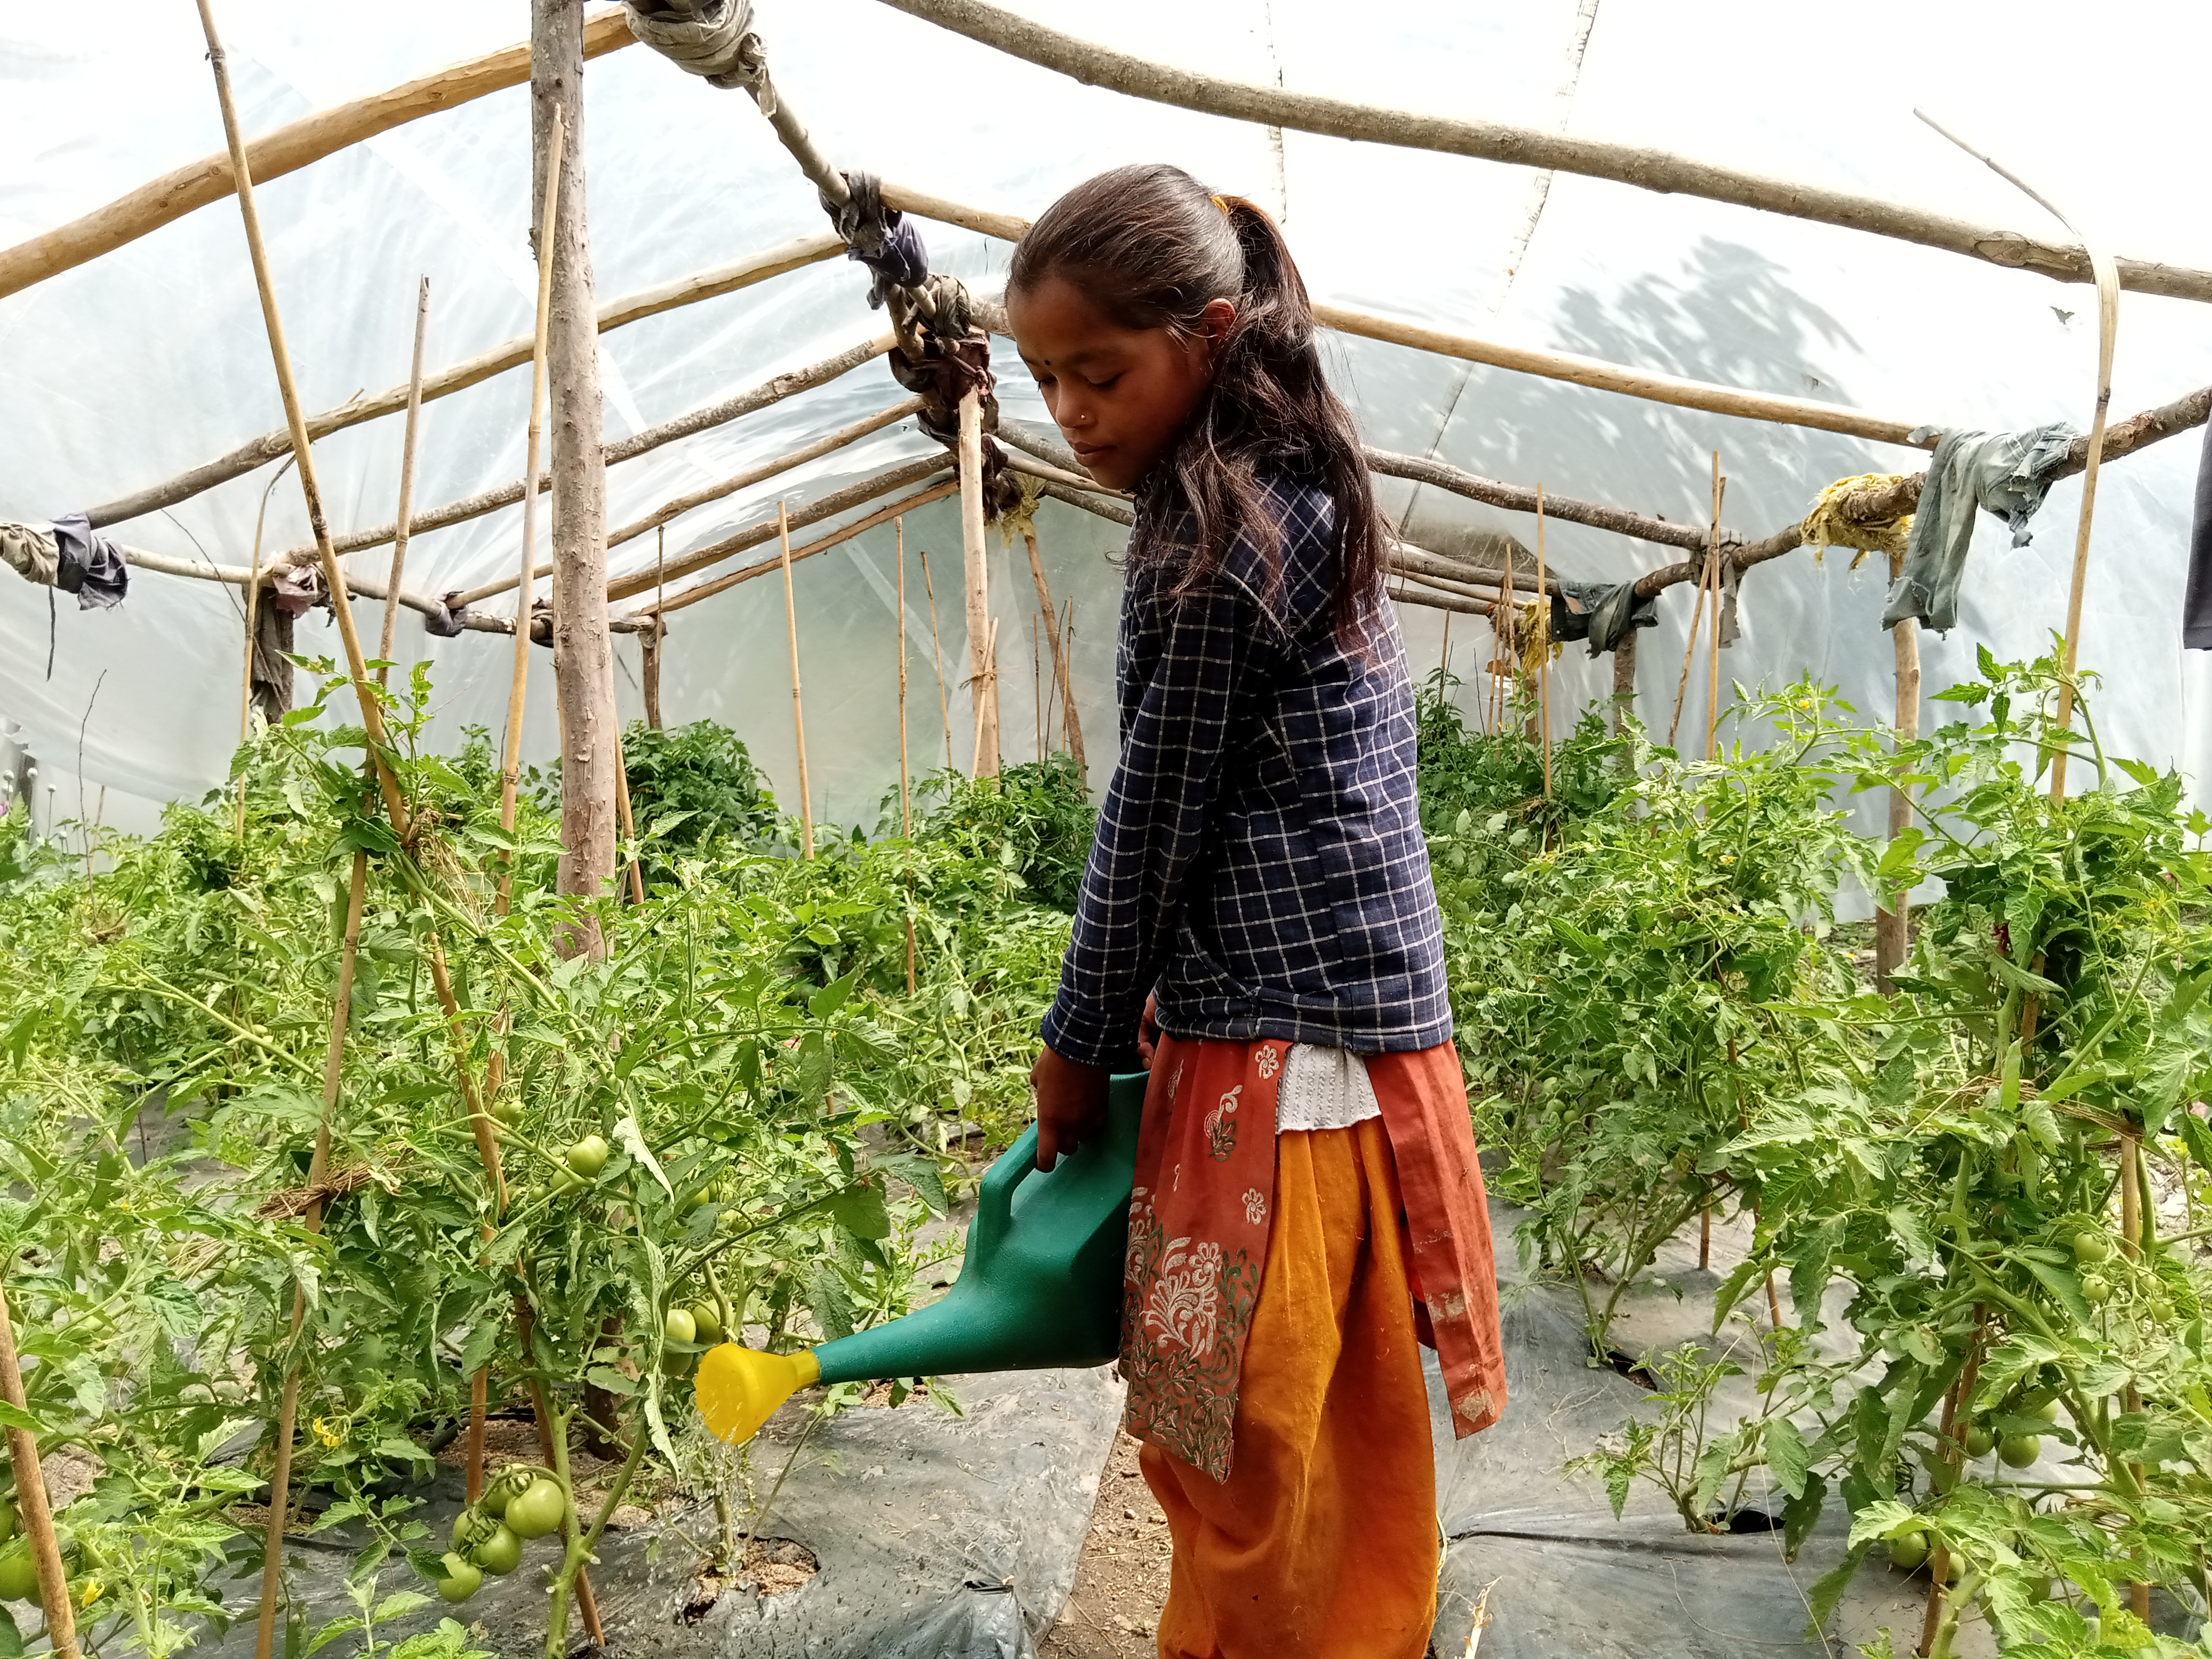 Rita e sua família agora podem cultivar alimentos de qualidade o ano inteiro / Foto: Nar Bahadur Rokaya / ActionAid